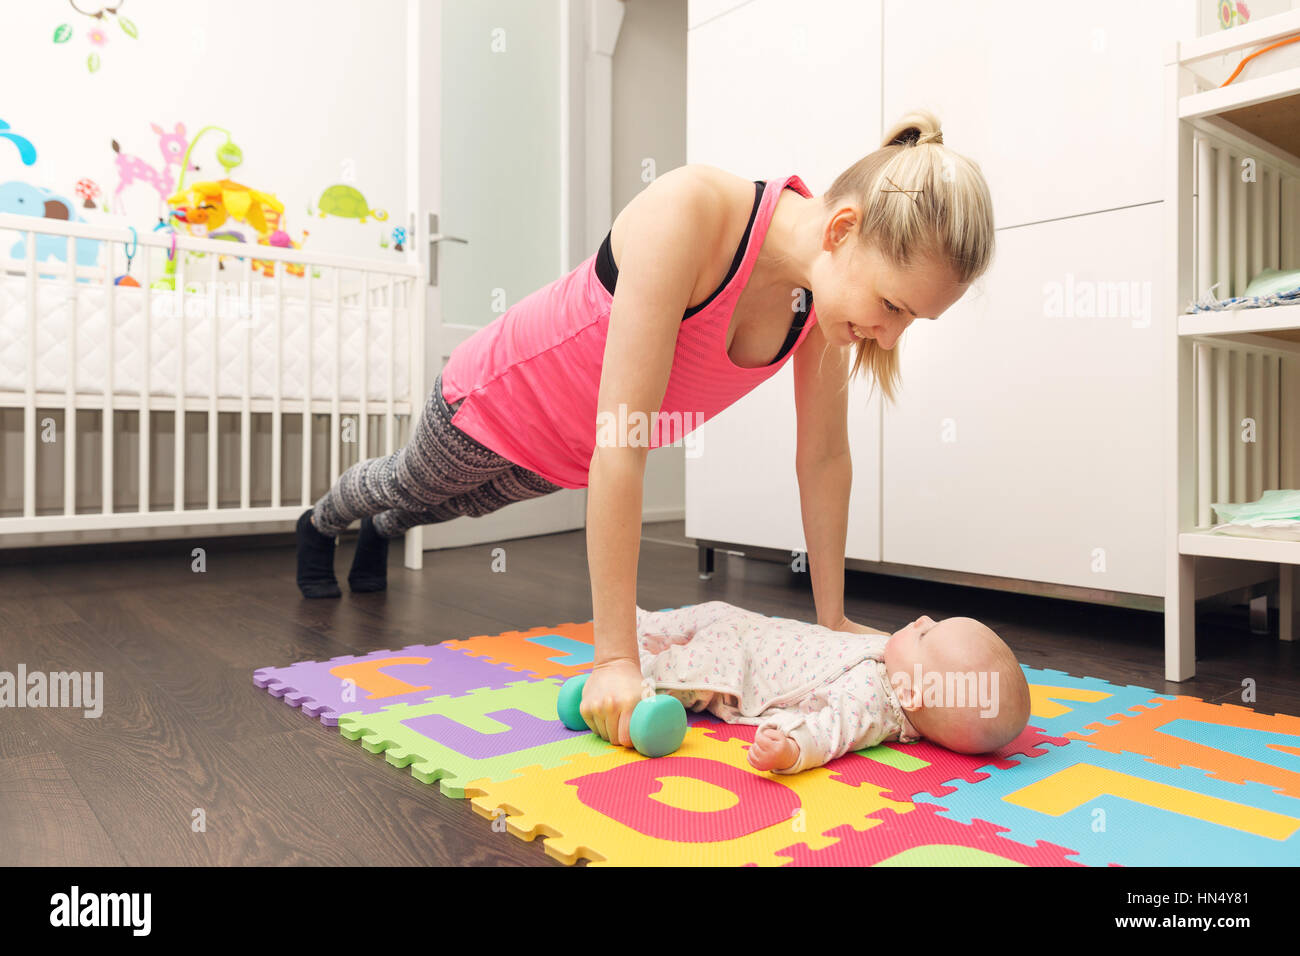 Remise en forme et faire mère jouant avec son bébé Banque D'Images